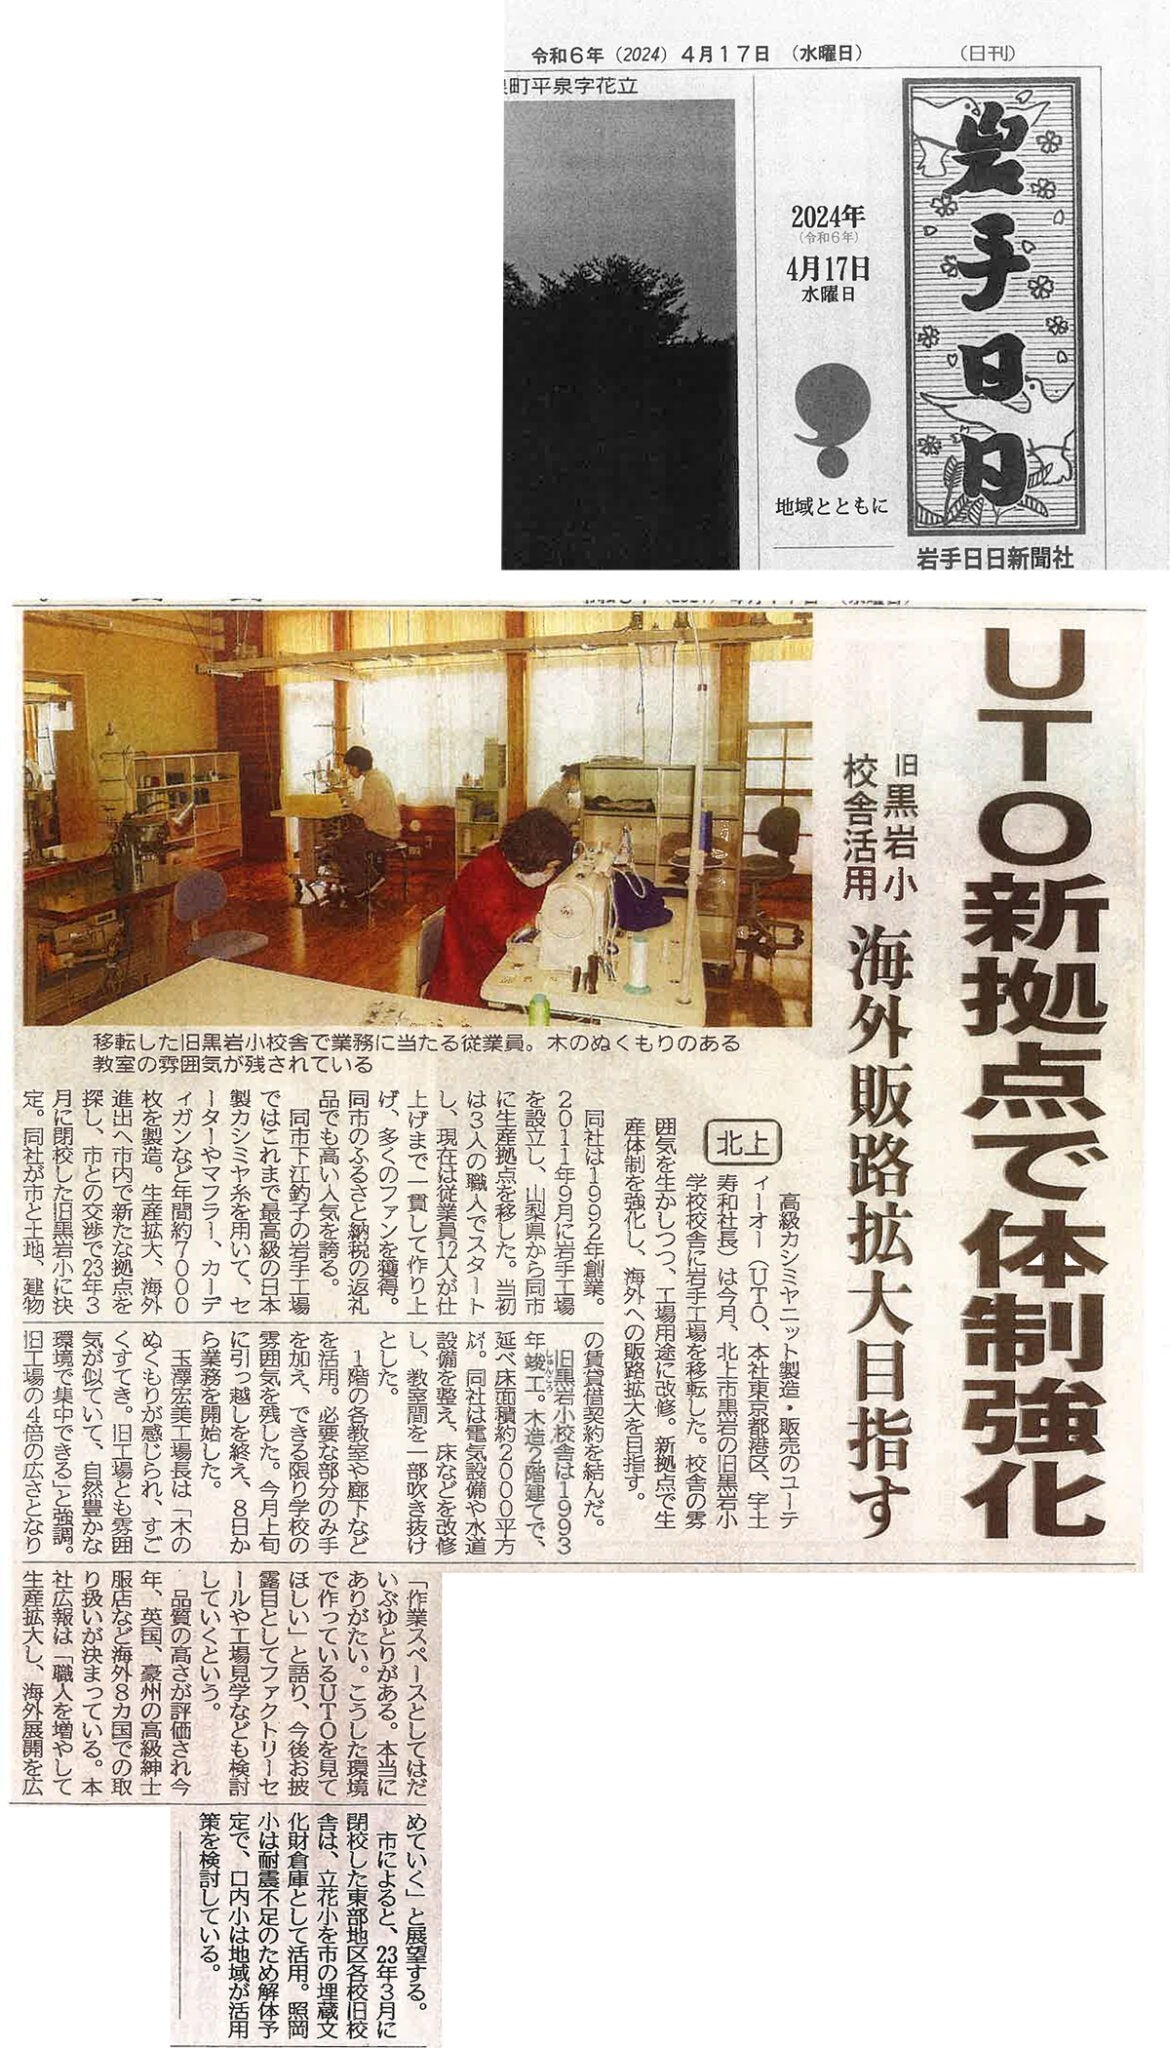 <!--⑦【新聞・岩手日日】新拠点で生産体制を強化-->[The Newspaper, Iwate Nichinichi] Reinforcing production system at the new base